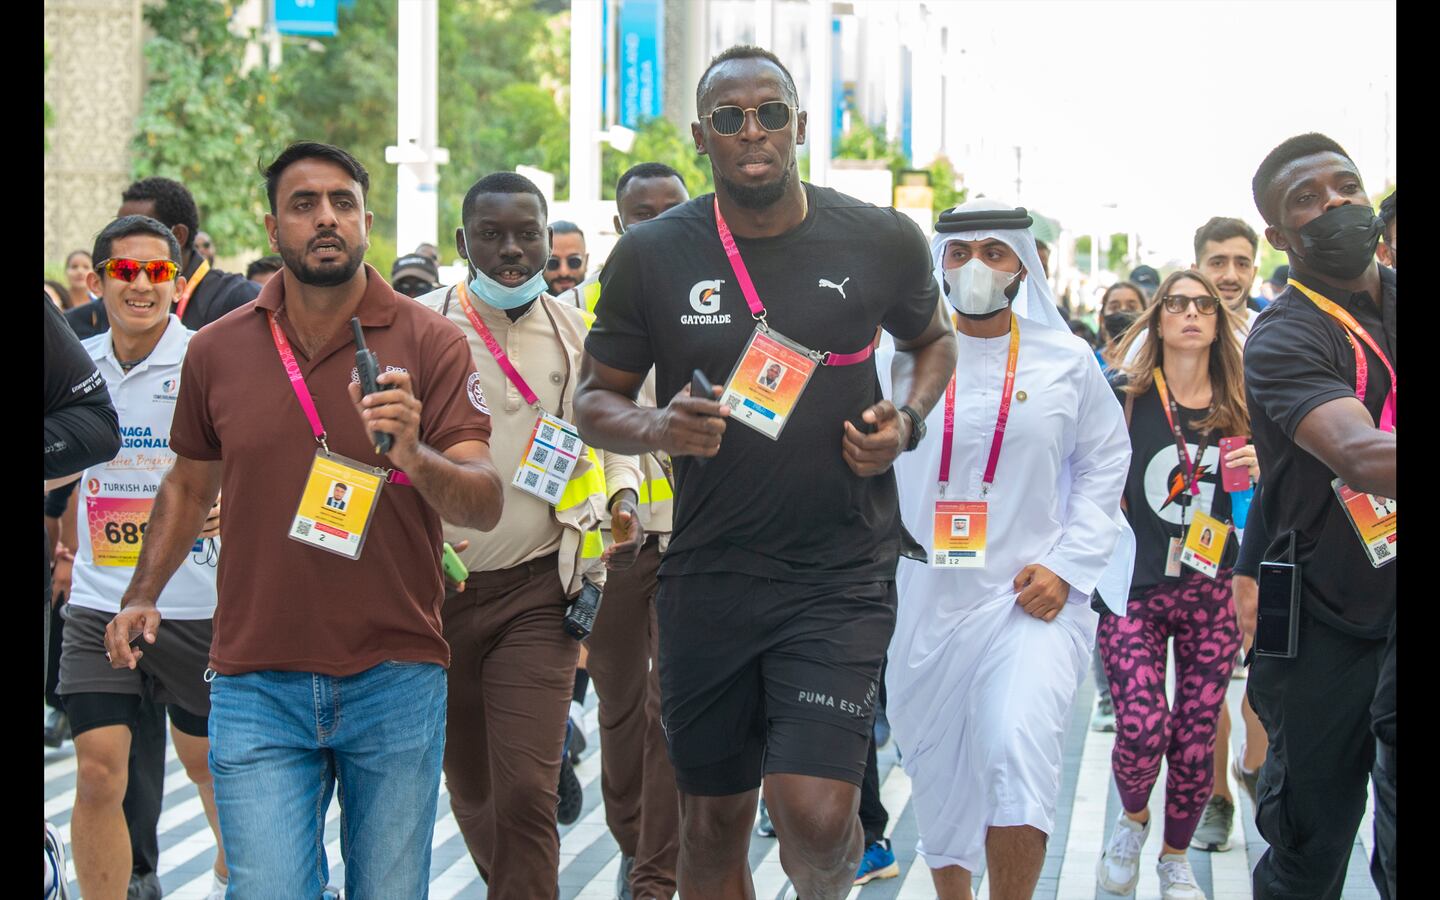 Usain Bolt took part in an Expo 2020 Dubai fun run 